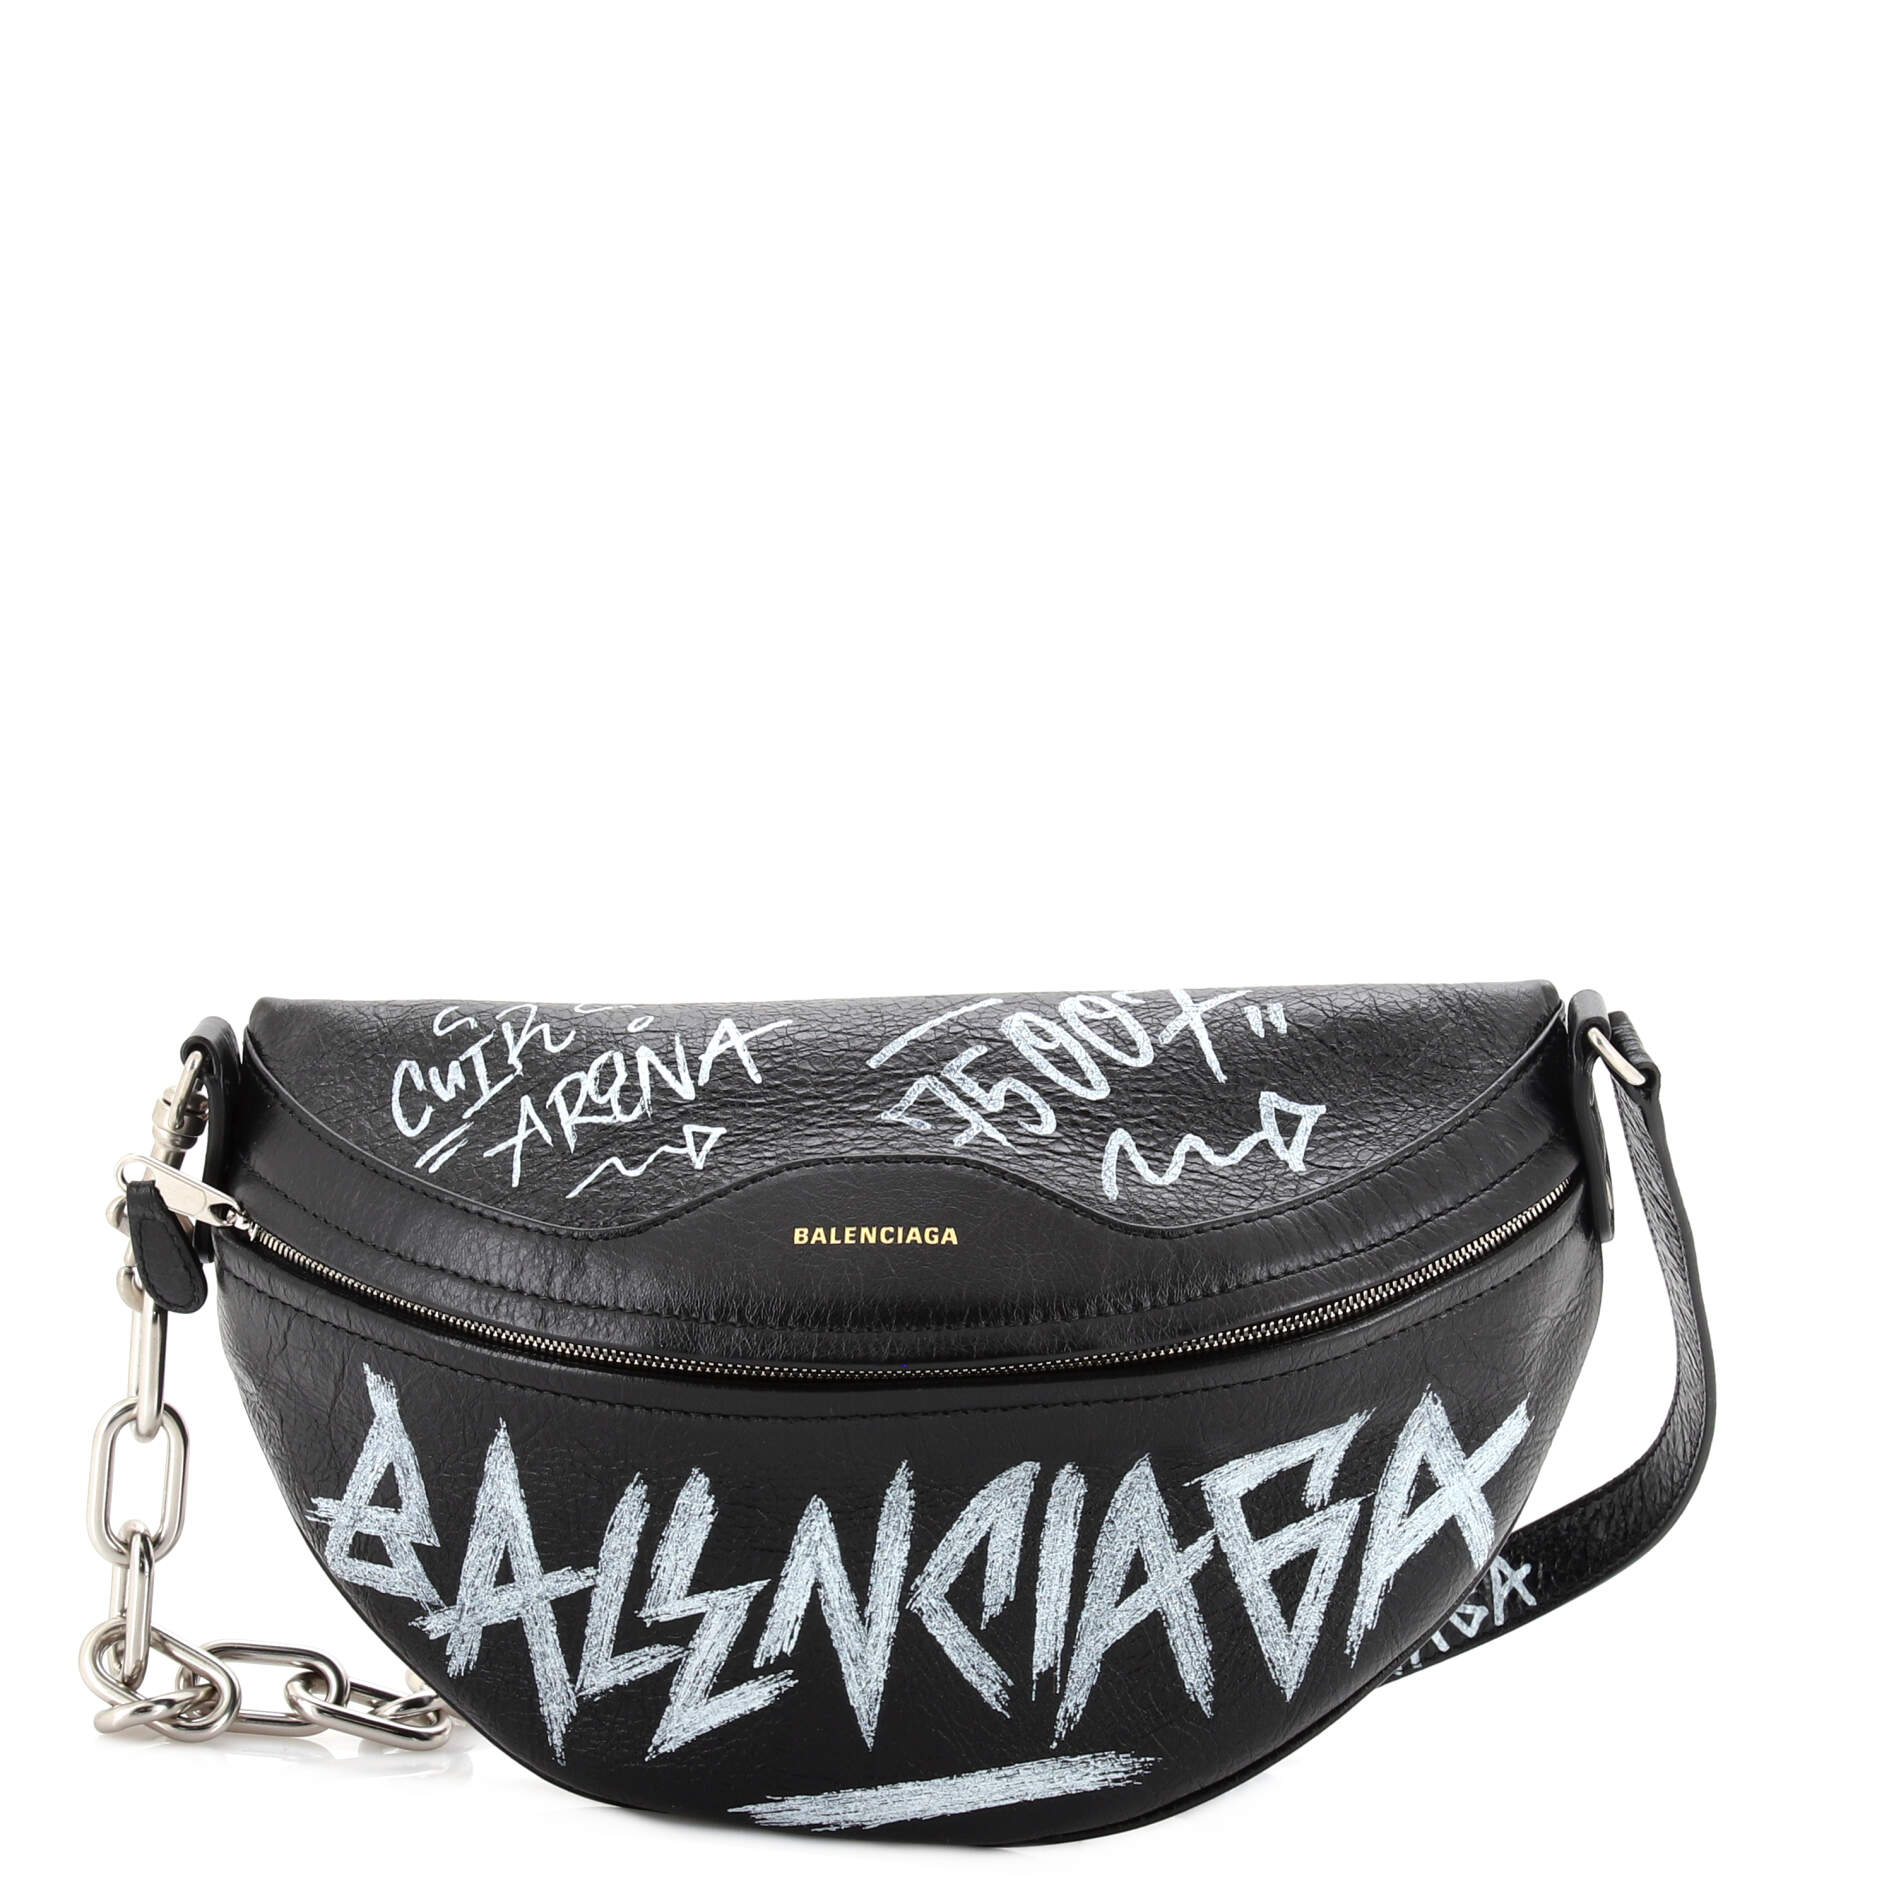 Graffiti Souvenir Belt Bag Leather XS